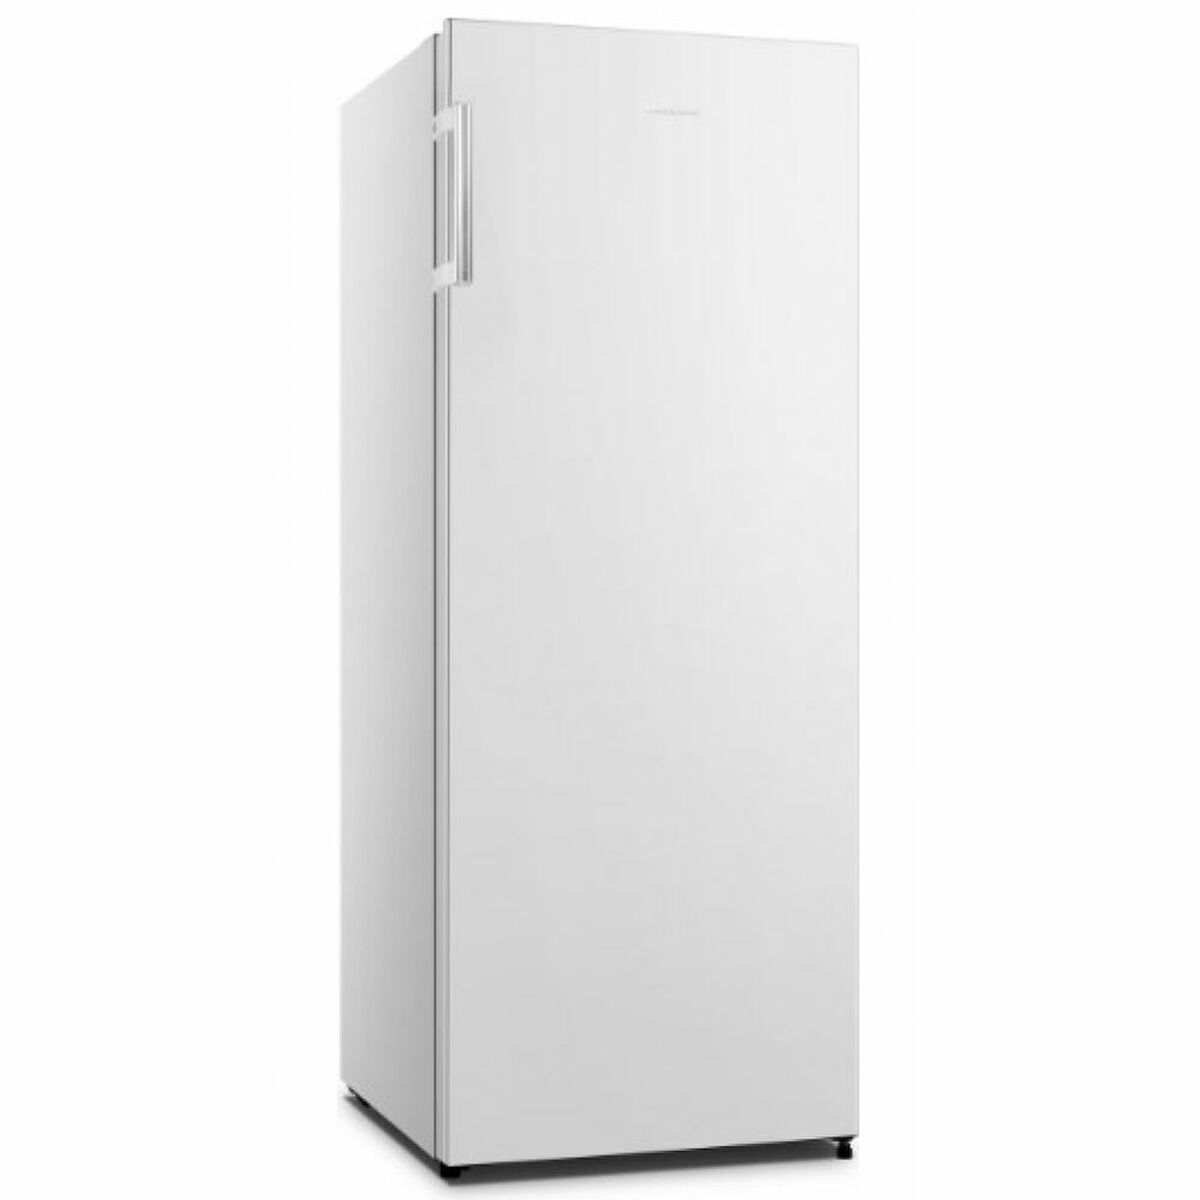 Freezer Hisense FV191N4AW1 White (144 x 55,4 cm)